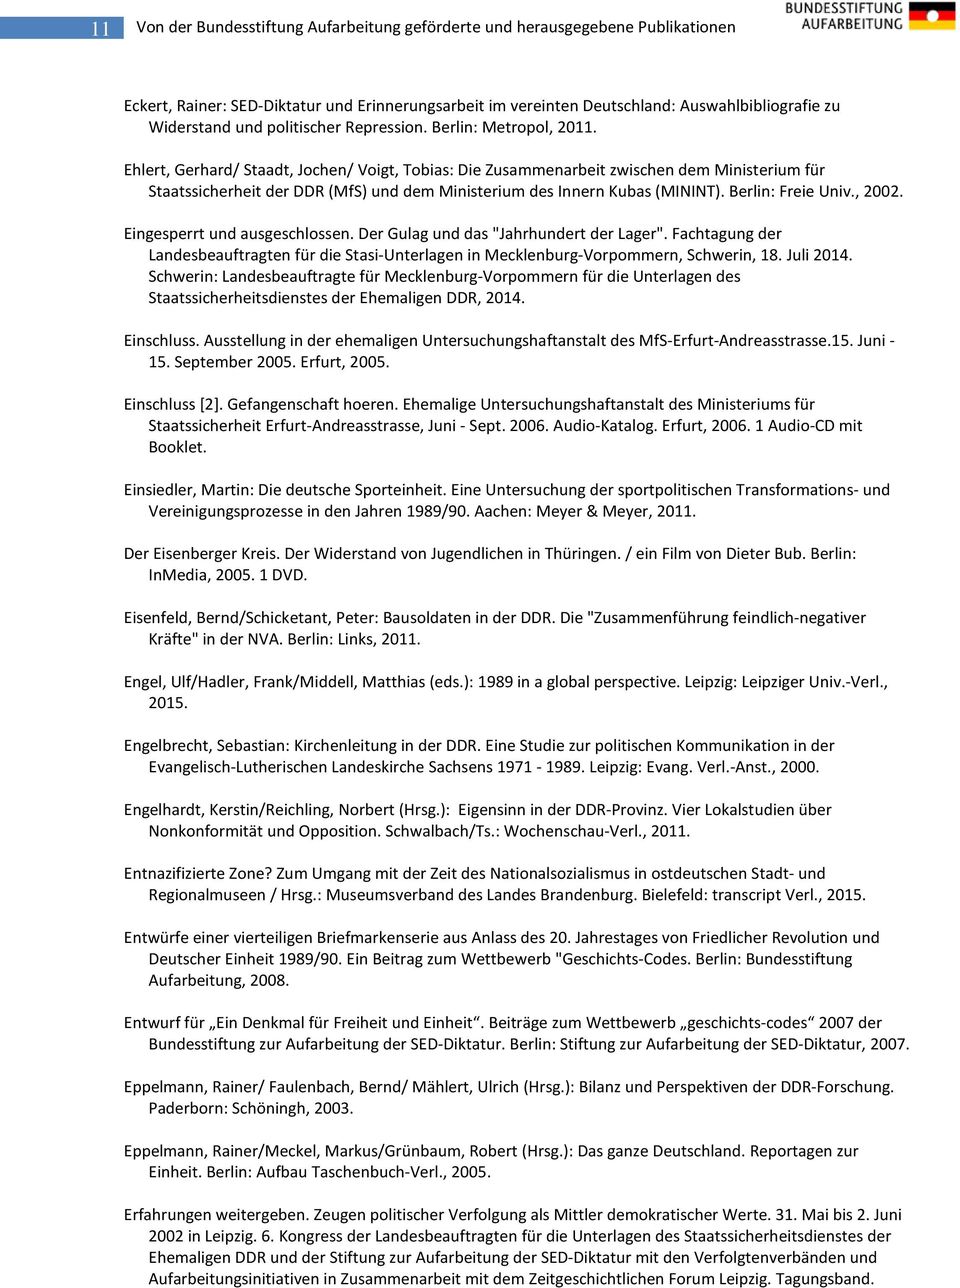 Ehlert, Gerhard/ Staadt, Jochen/ Voigt, Tobias: Die Zusammenarbeit zwischen dem Ministerium für Staatssicherheit der DDR (MfS) und dem Ministerium des Innern Kubas (MININT). Berlin: Freie Univ., 2002.